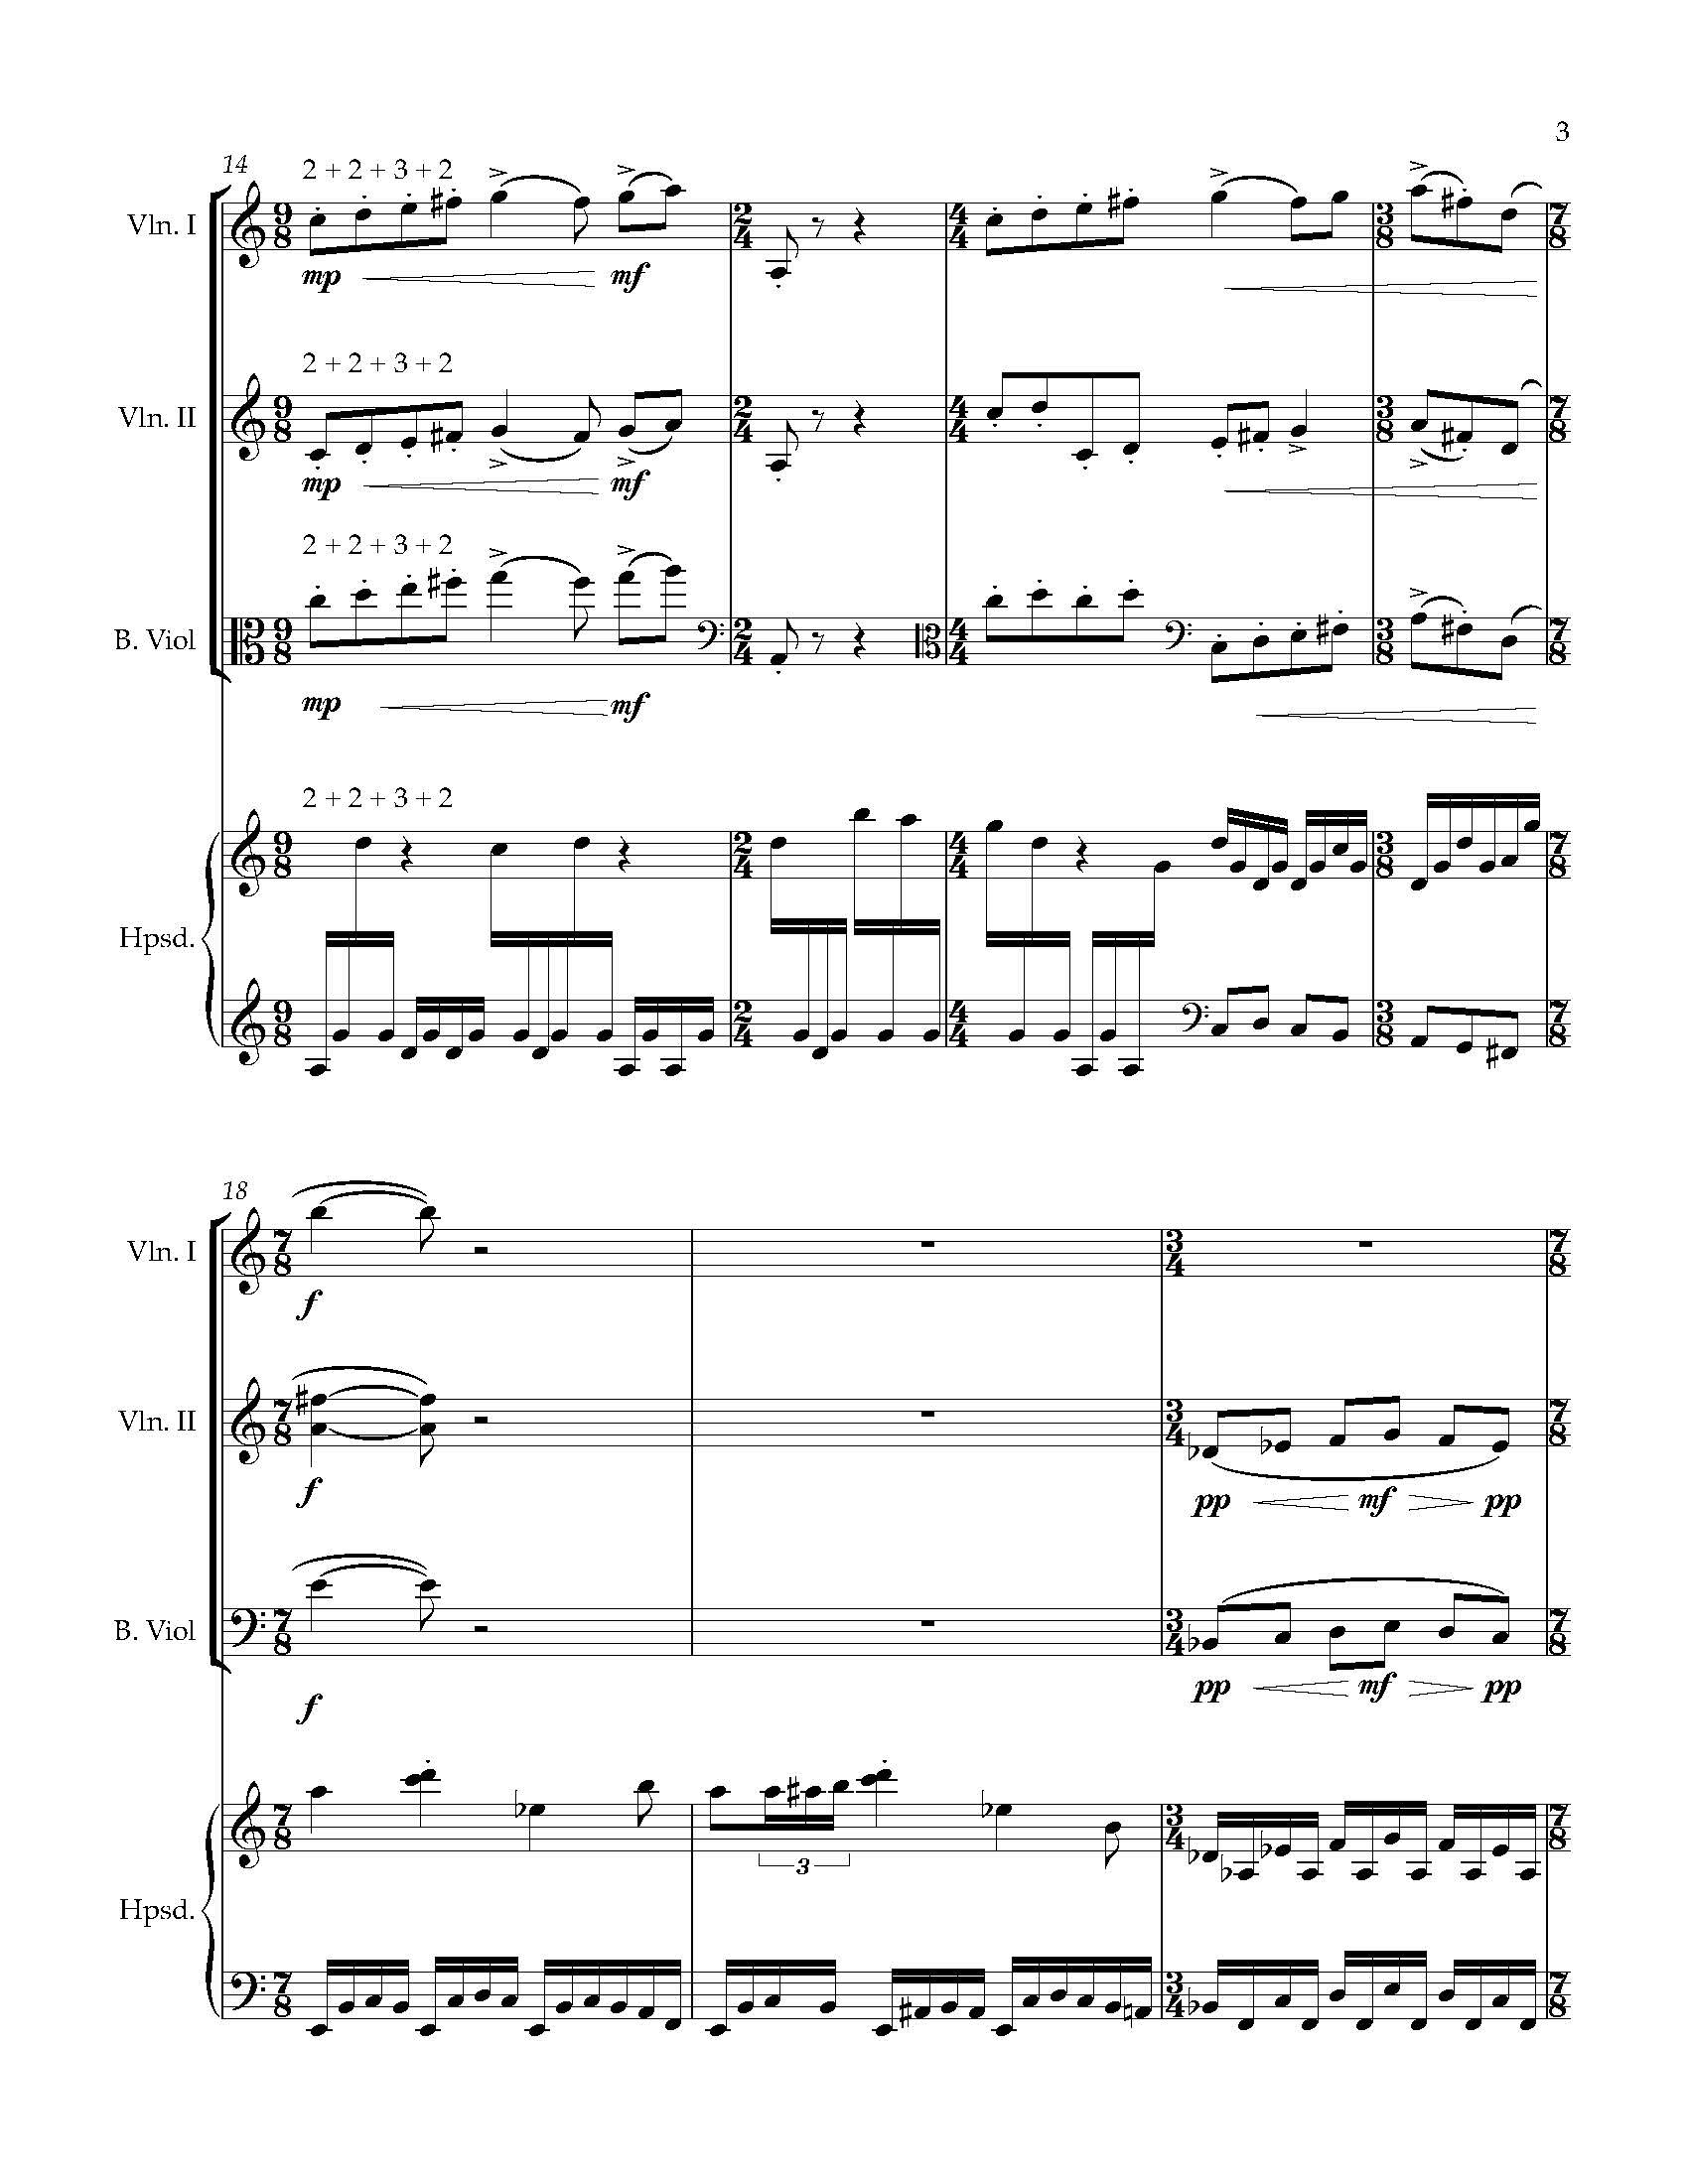 Sonata Sonare - Complete Score_Page_09.jpg